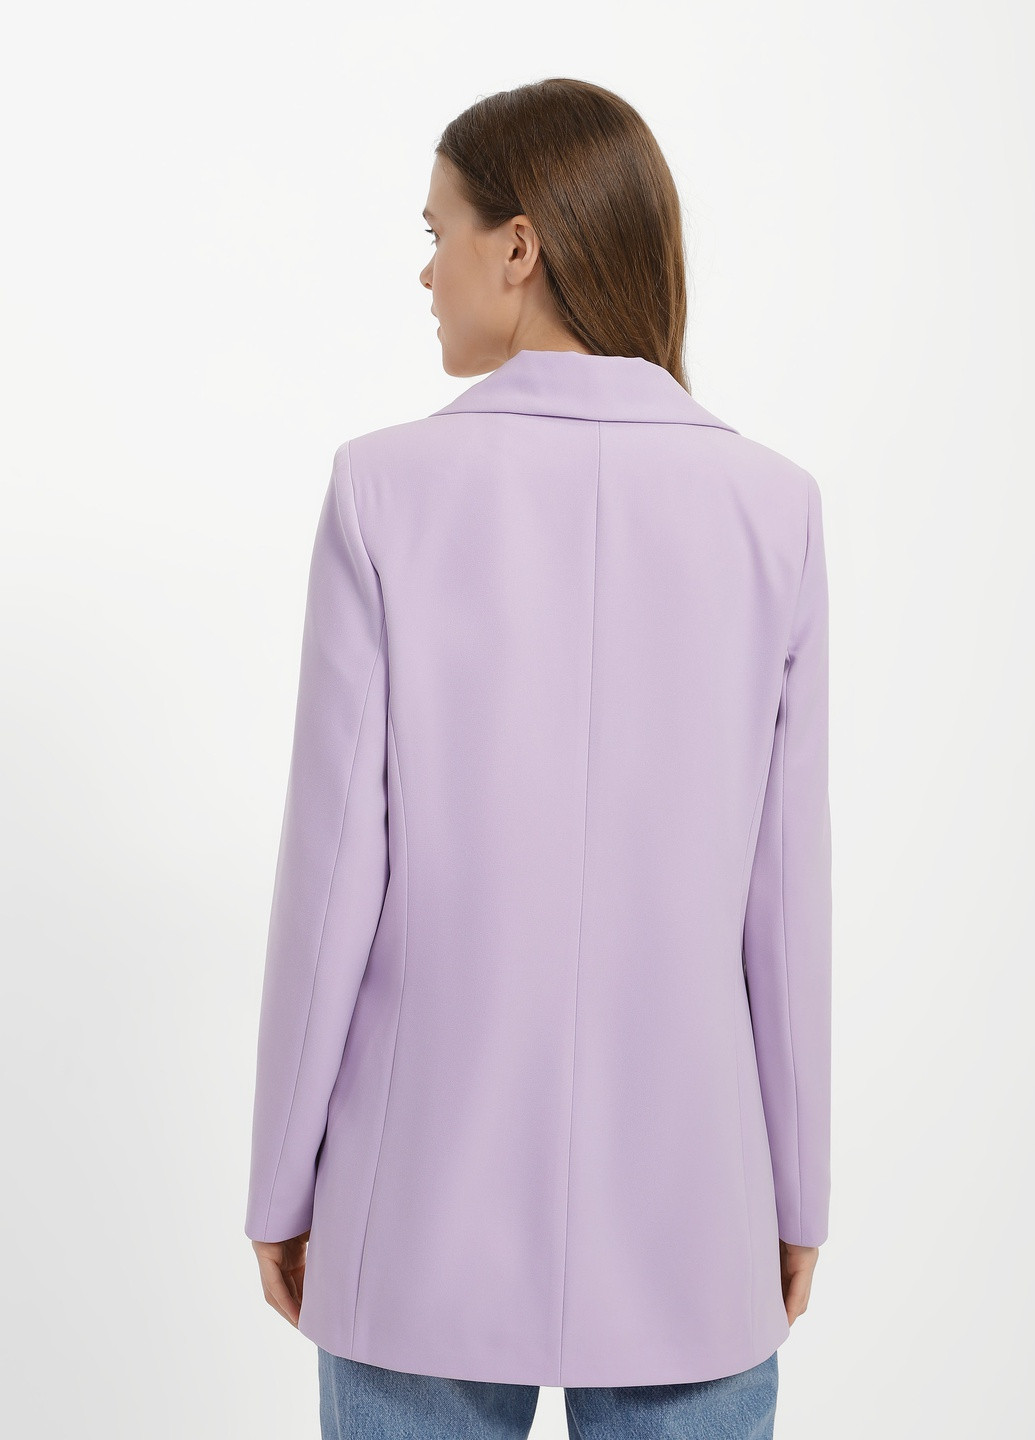 Фиолетовый женский жіночий піджак 3035rs DANNA - демисезонный